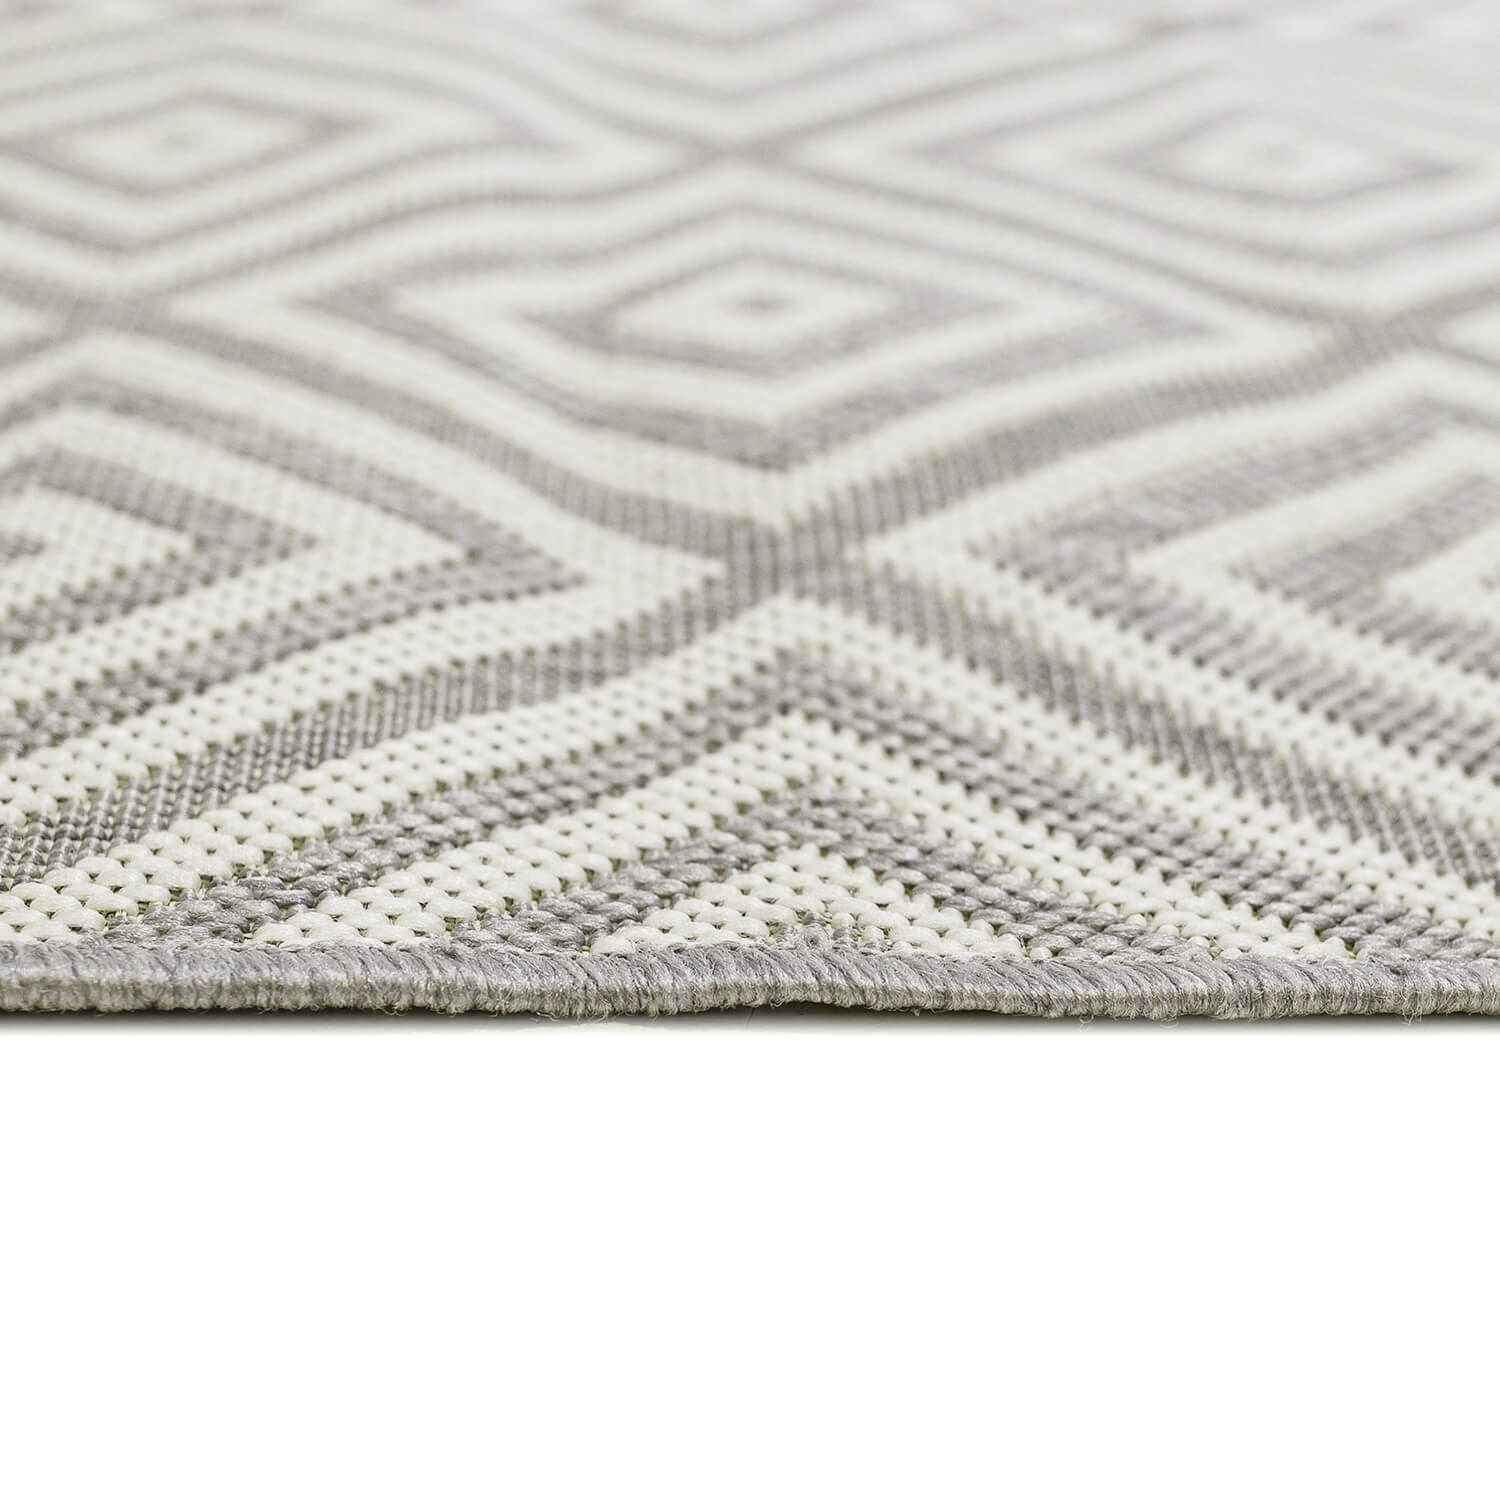 ALFOMBRAS RUGit - ¡Nuestras alfombras lavables son de tejido plano! Esto  las hace duraderas y resistentes, a diferencia de las piezas tejidas y  anudadas a mano, este tipo de alfombra no desprenden